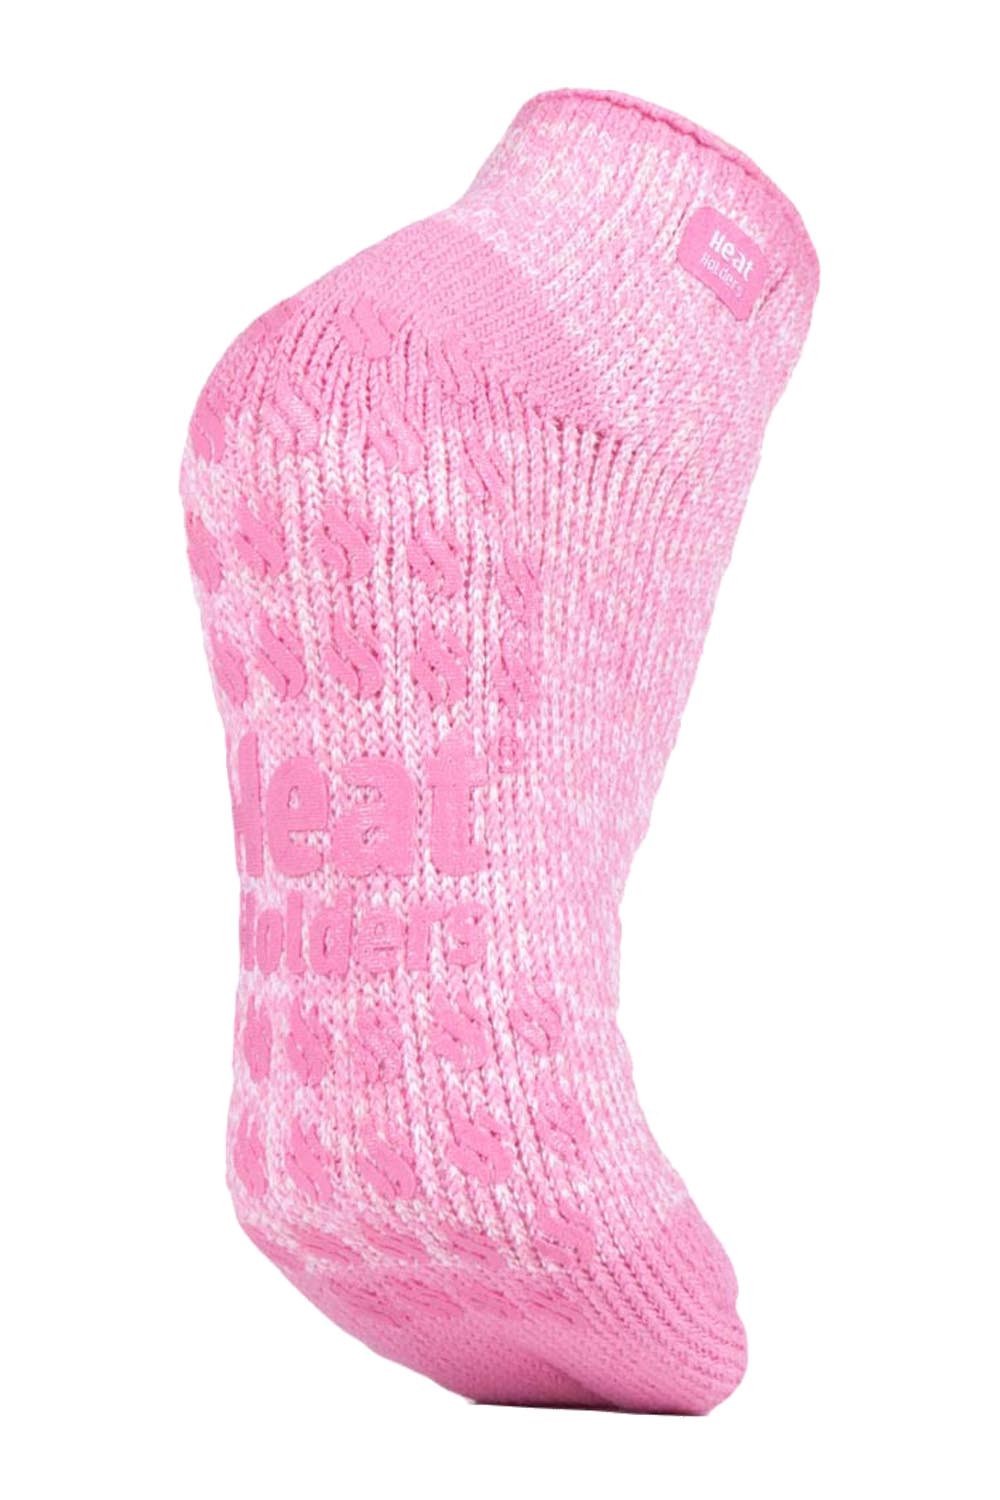 Womens Thermal Ankle Slipper Socks -